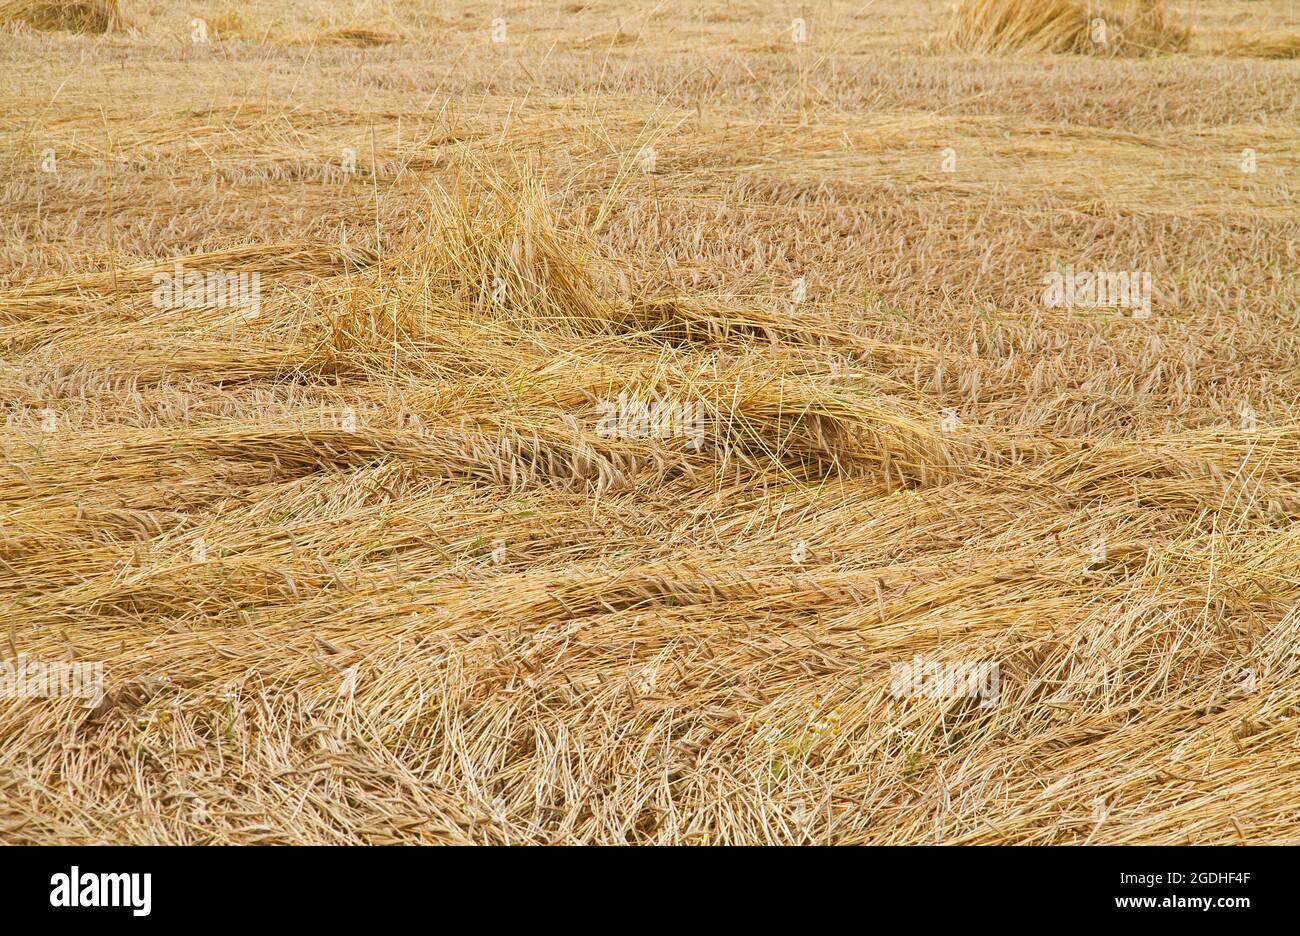 Récolte dévastée : grain aplati par le vent et la pluie dans un champ Banque D'Images